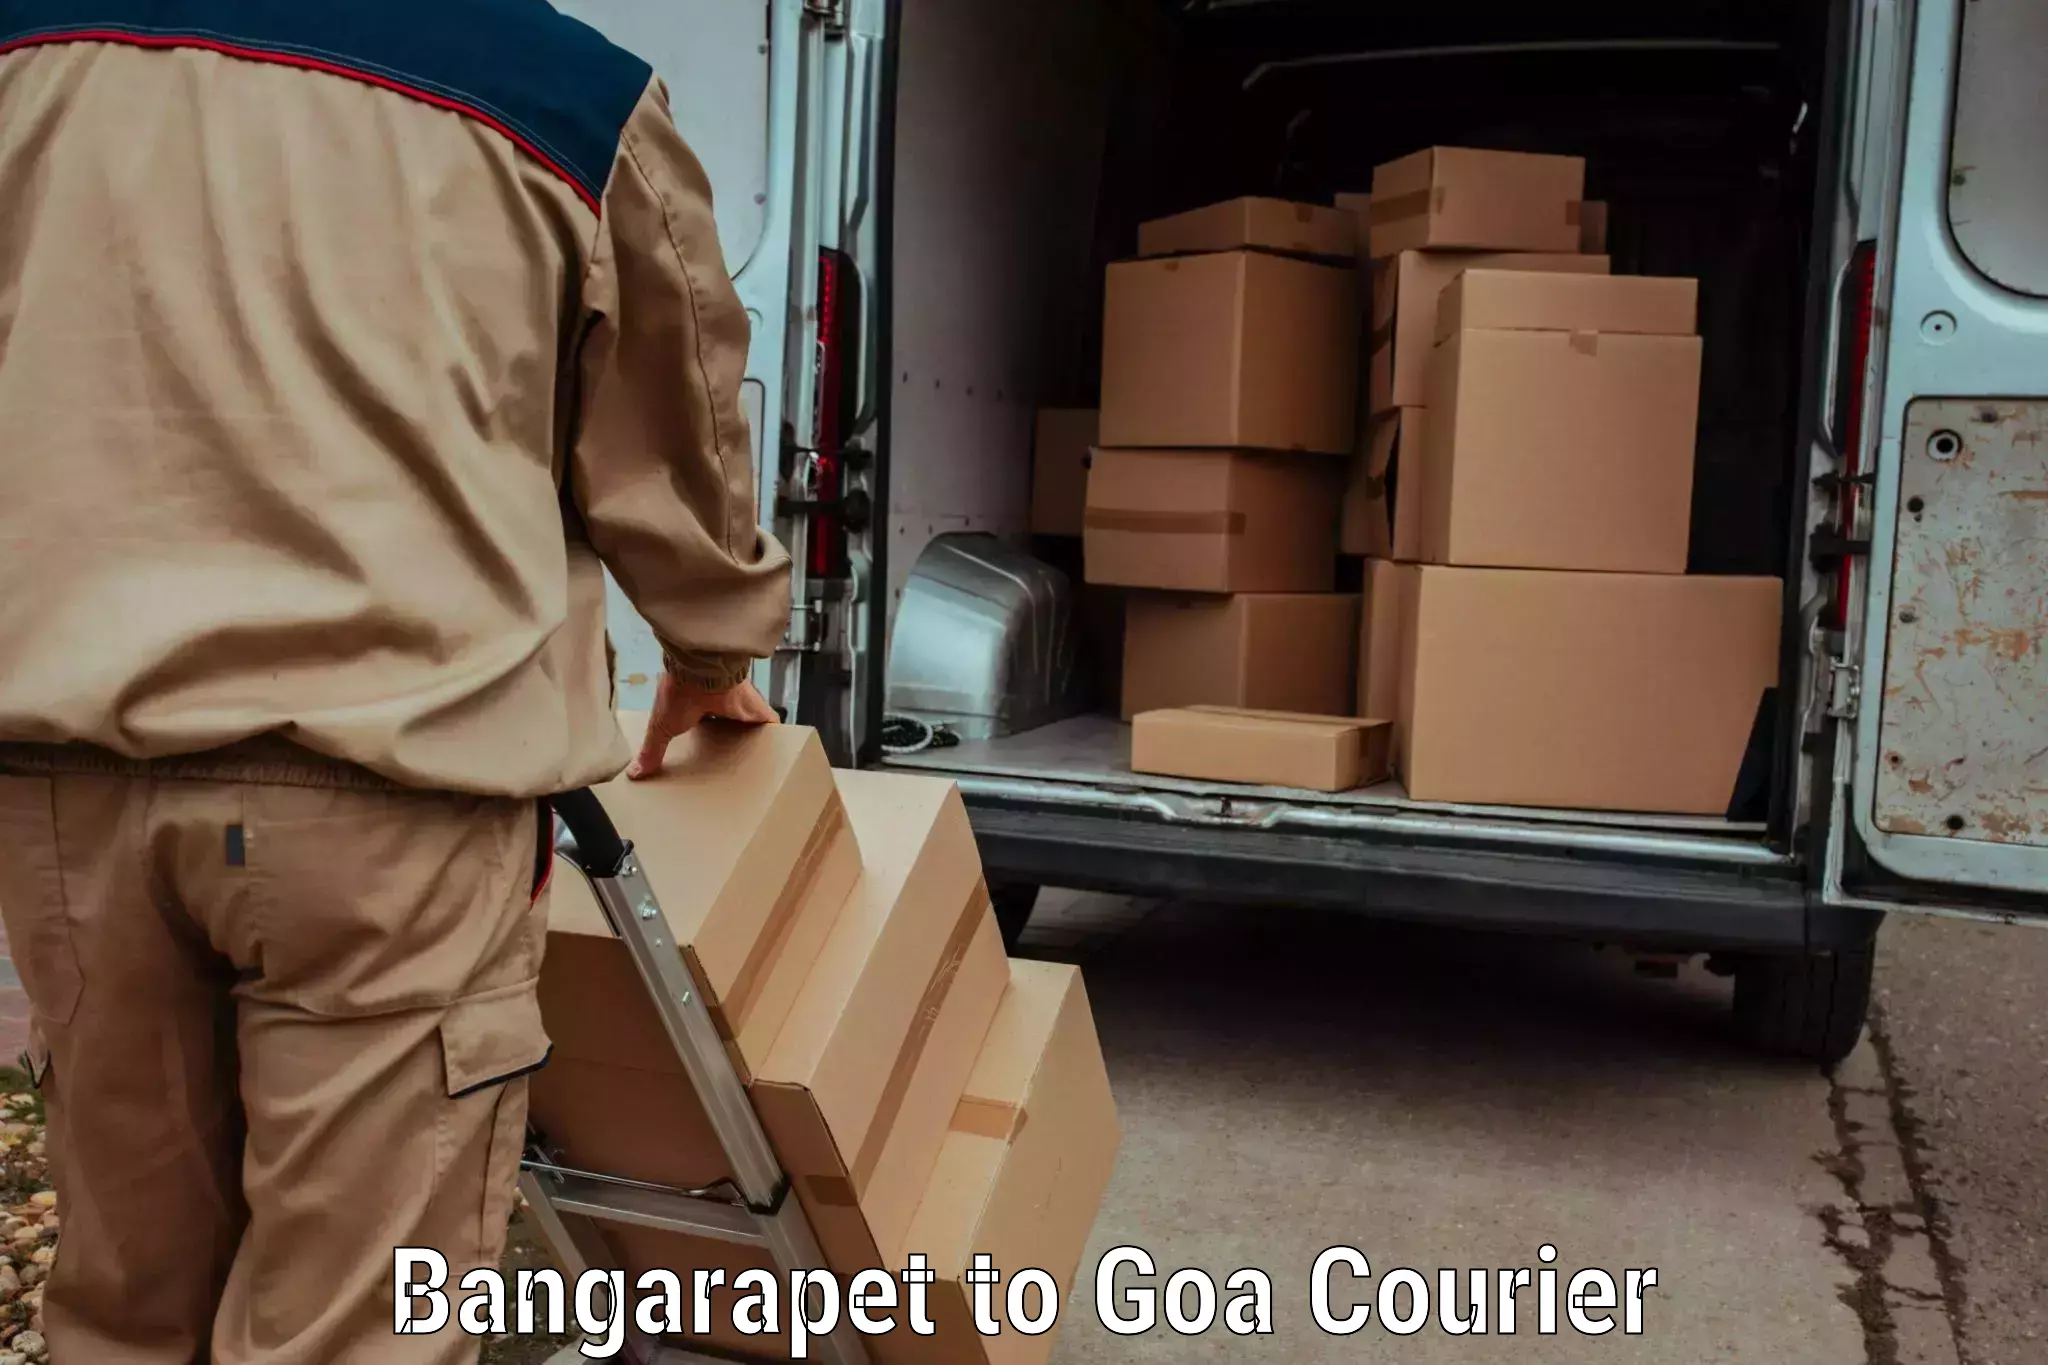 Luggage transport consulting Bangarapet to Goa